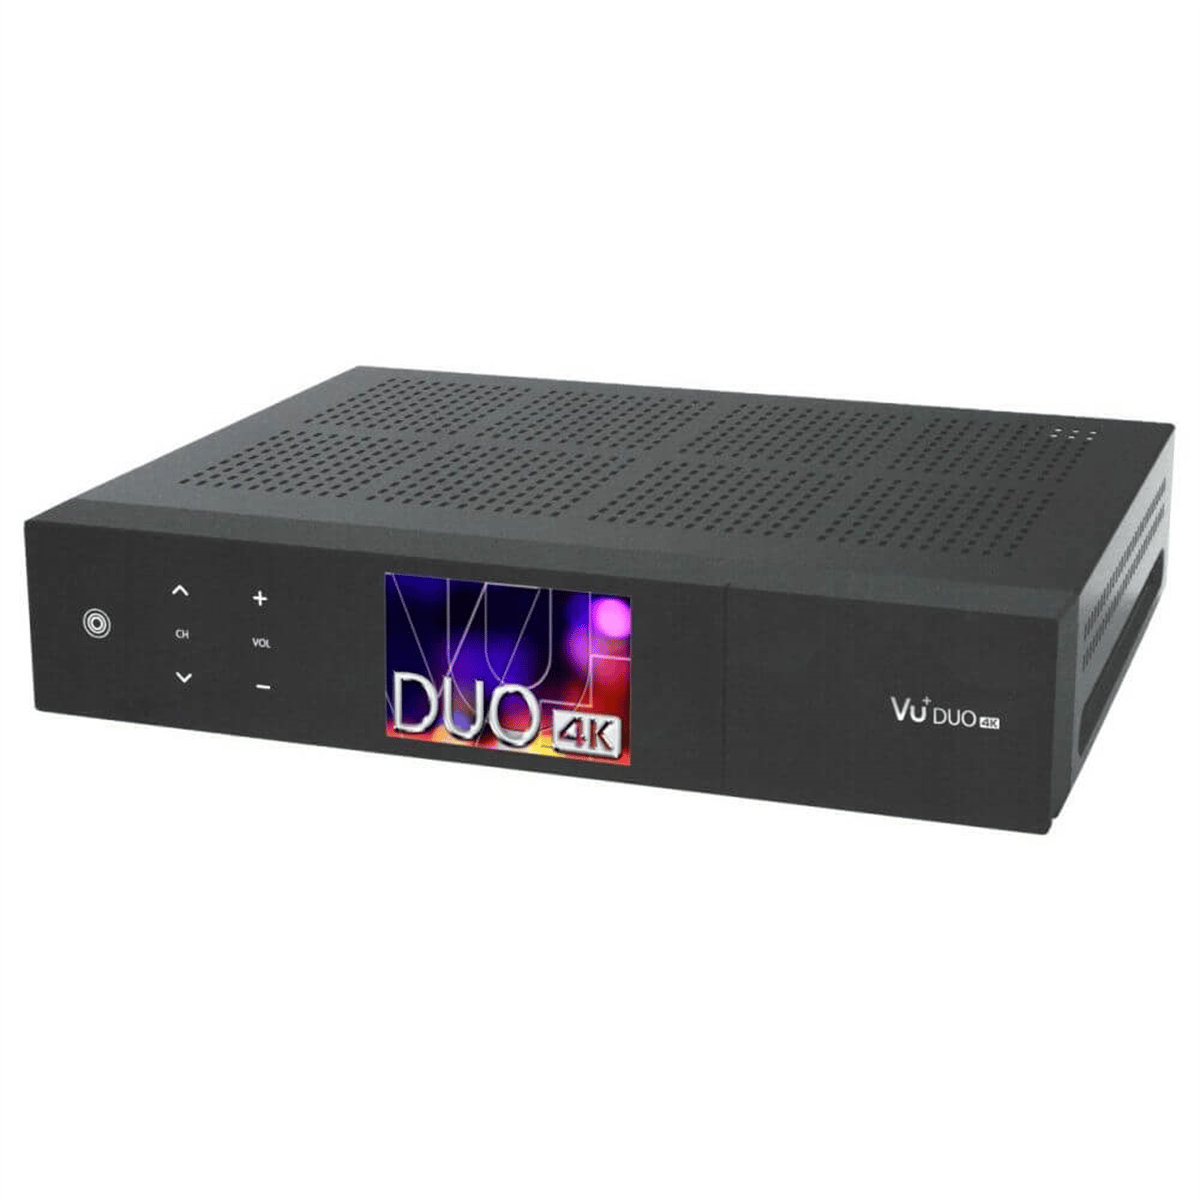 Vu+ Duo 4K DVB-S2X Tuner UHD Enigma2 Uydu Alıcısı